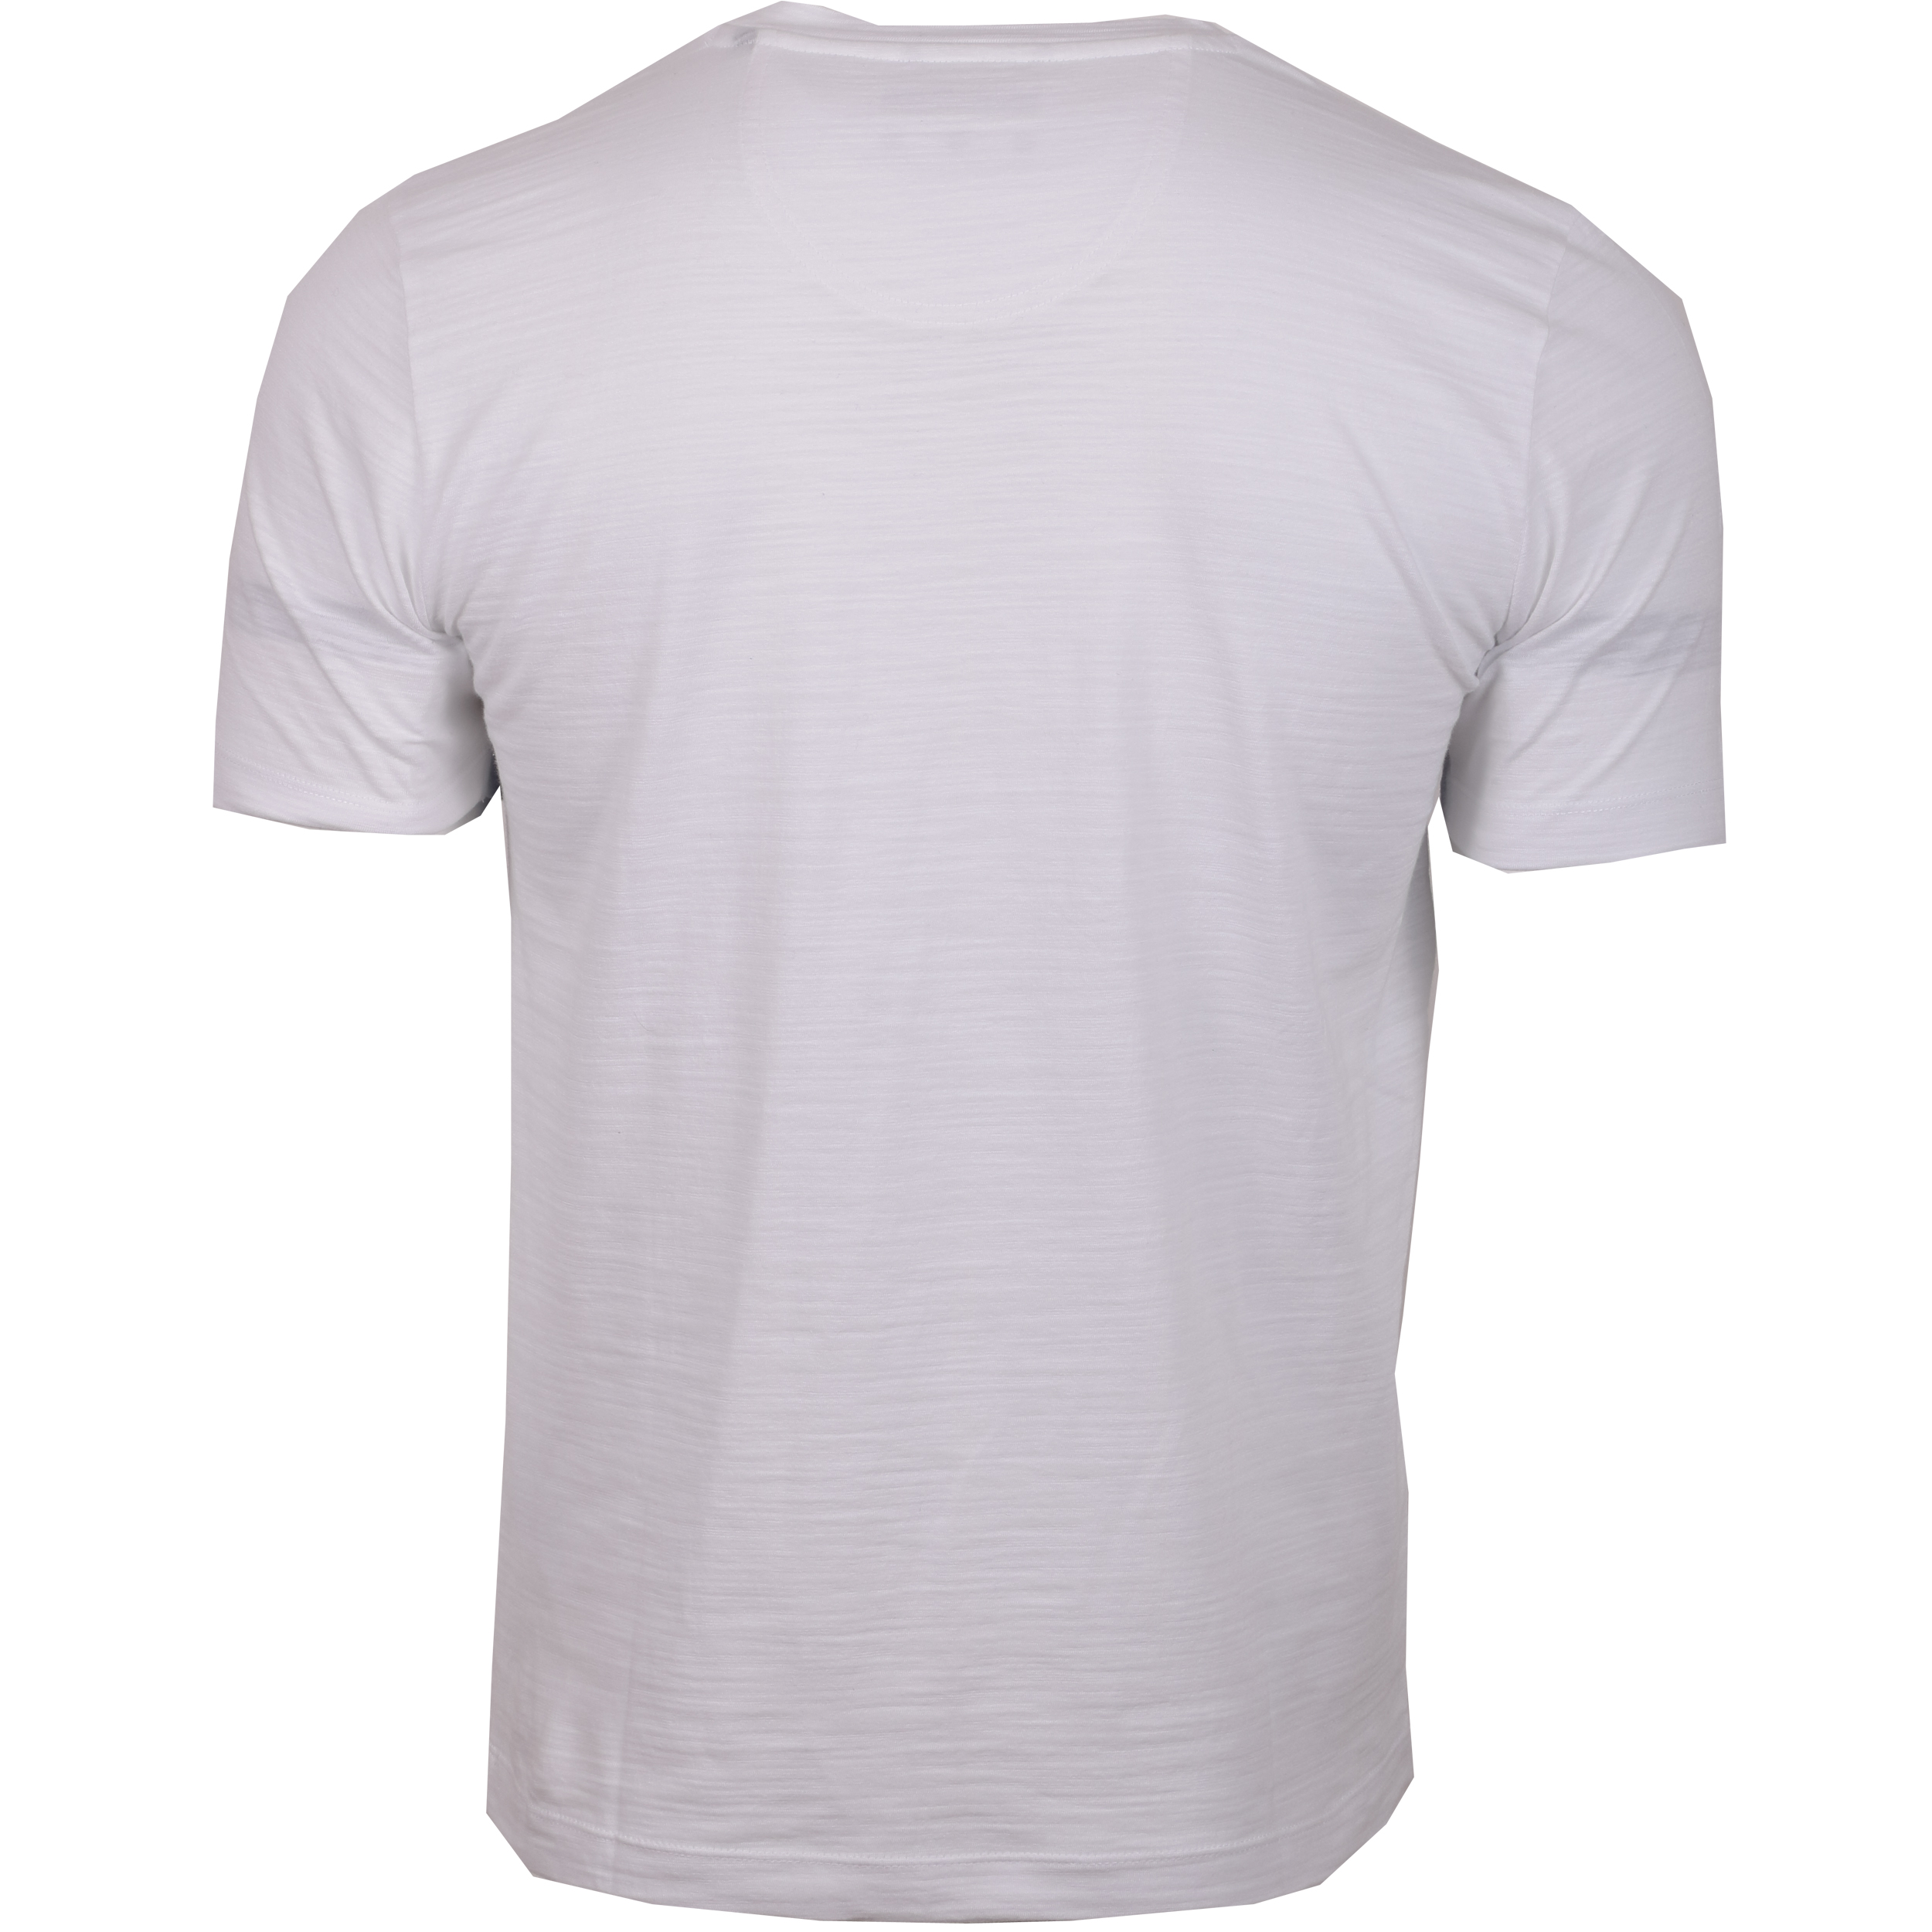 Pierre Cardin Herren T-Shirt Travel Comfort XL weiß